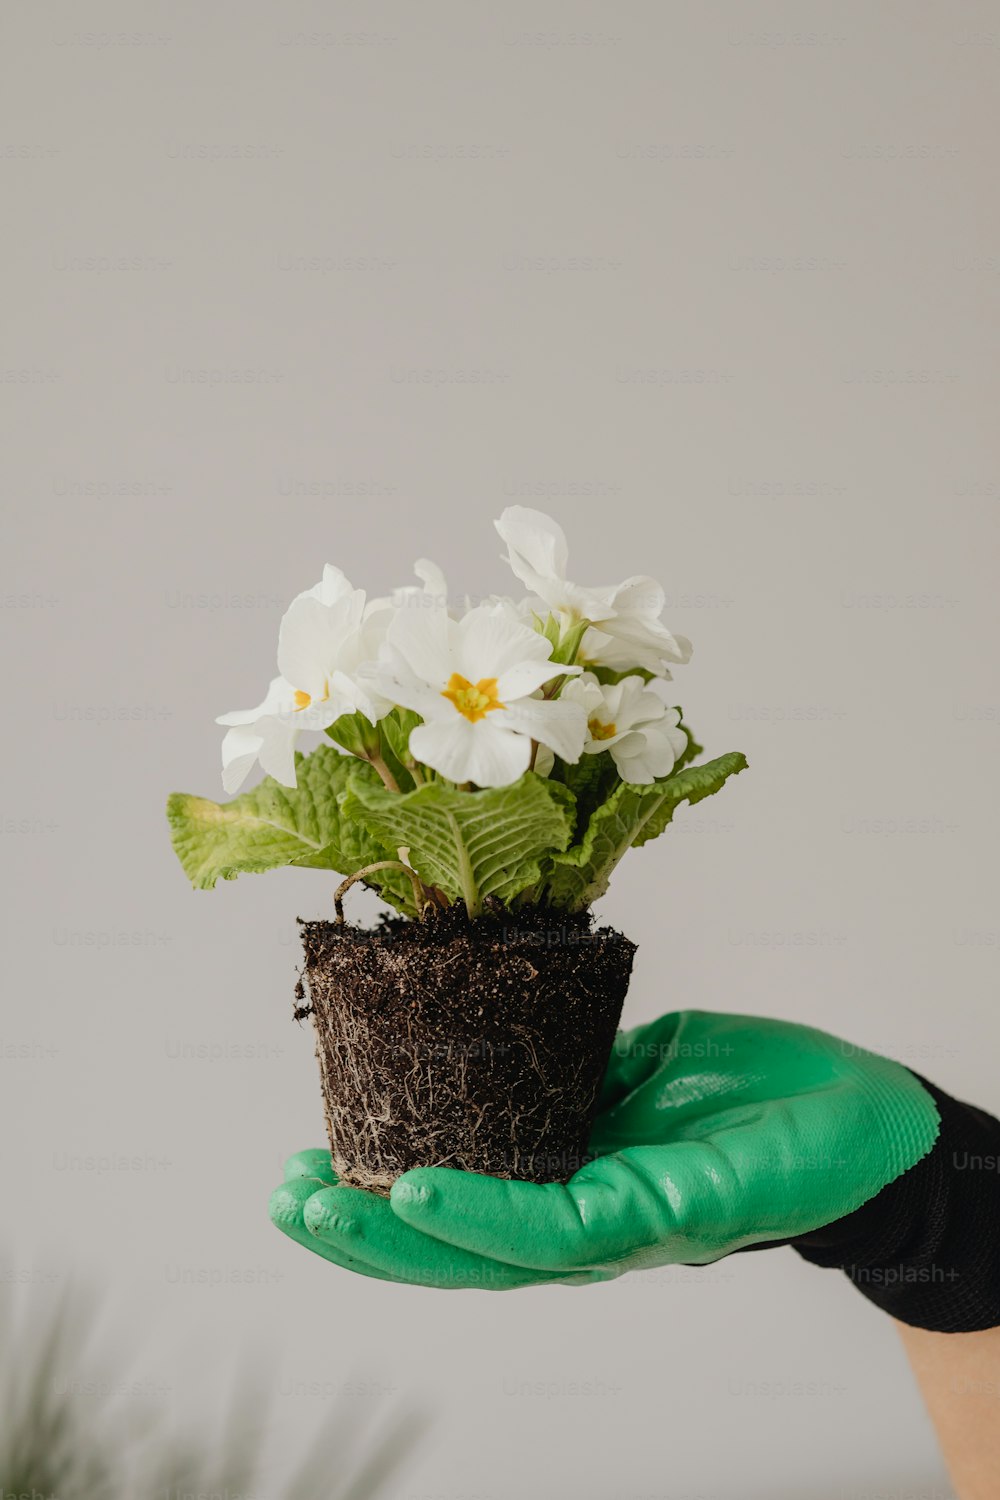 une personne tenant une plante en pot avec des fleurs blanches